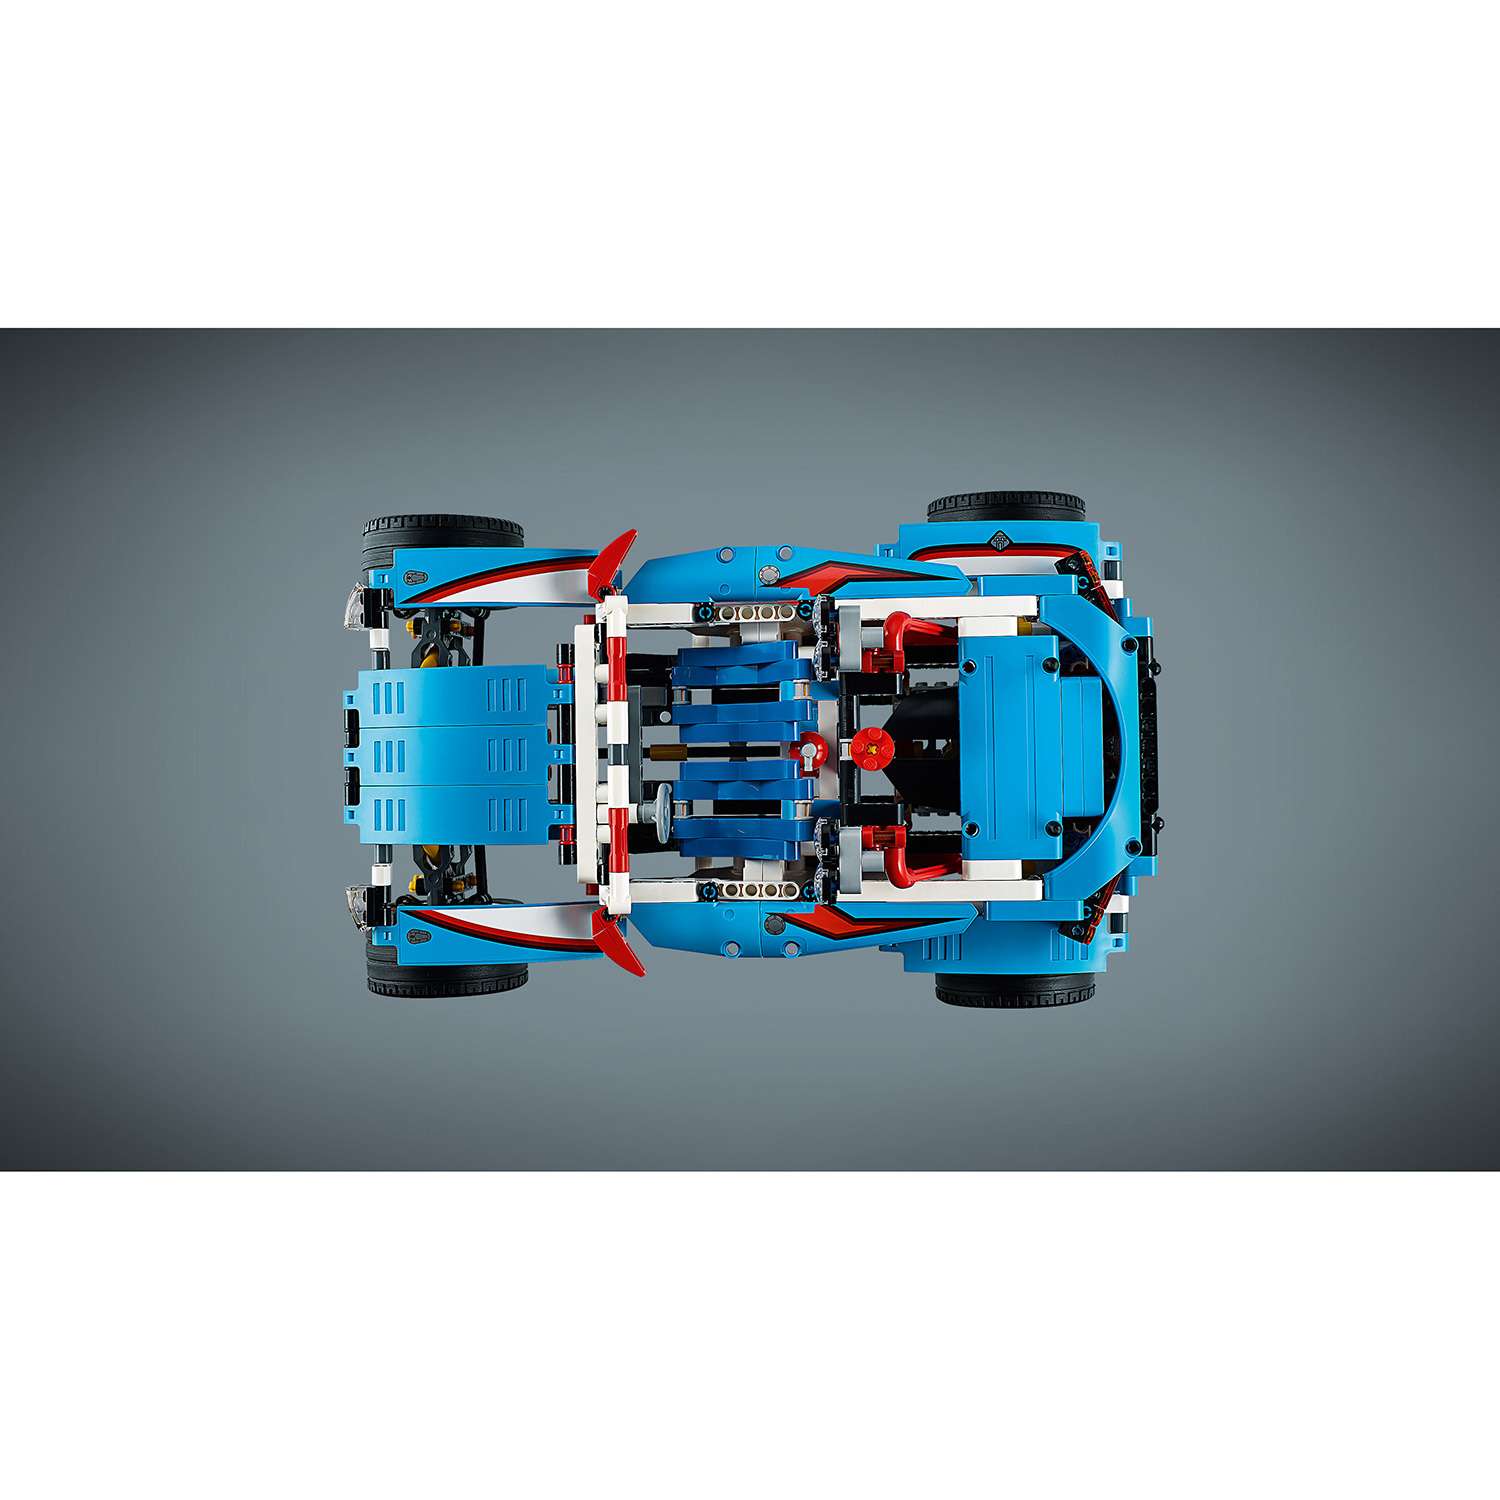 Конструктор LEGO Гоночный автомобиль Technic (42077) - фото 11